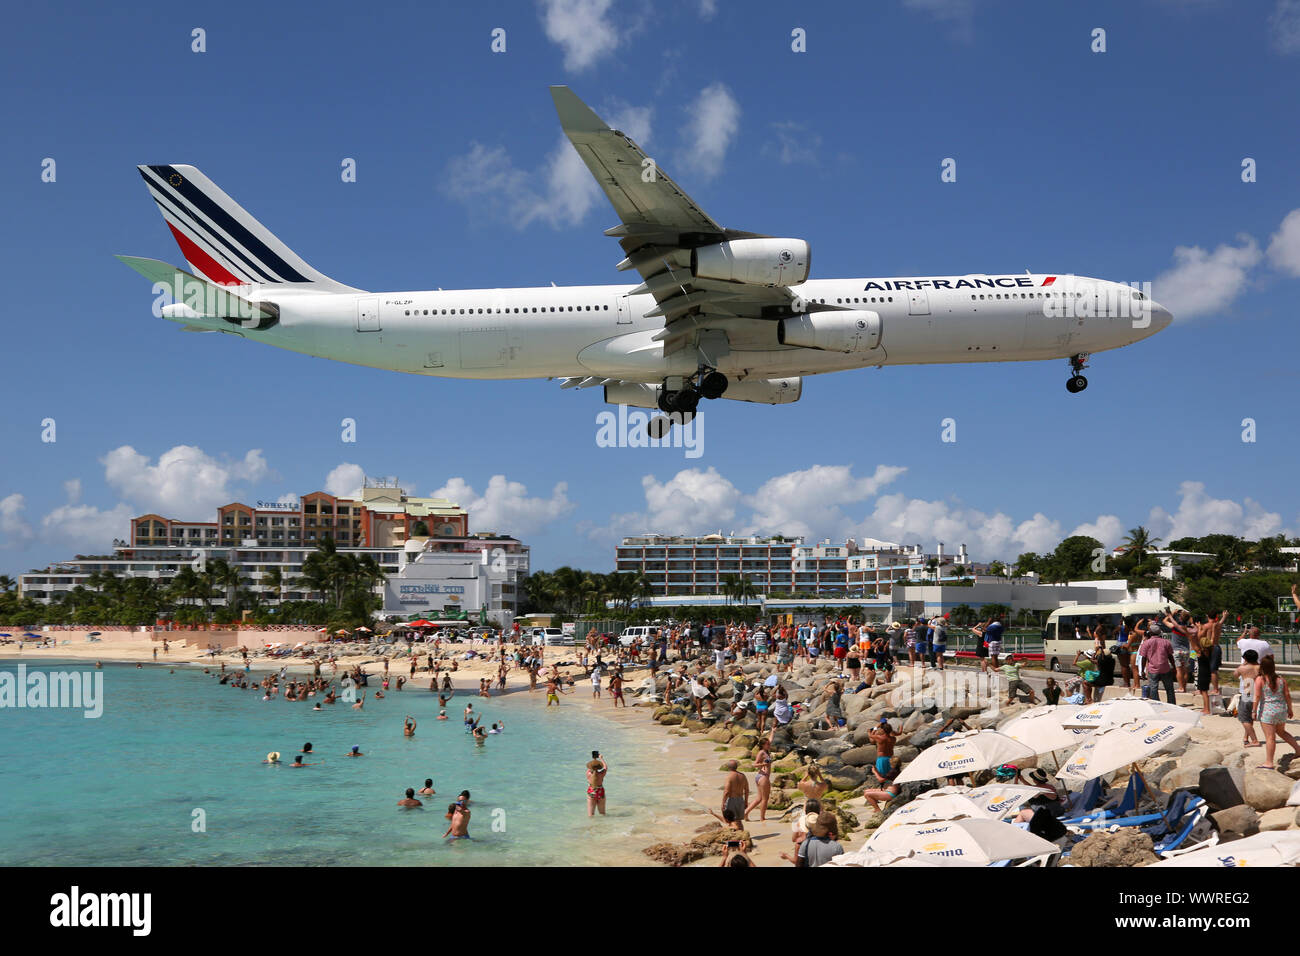 Air France Airbus A340-300 aircraft landing airport Sint Maarten Stock Photo